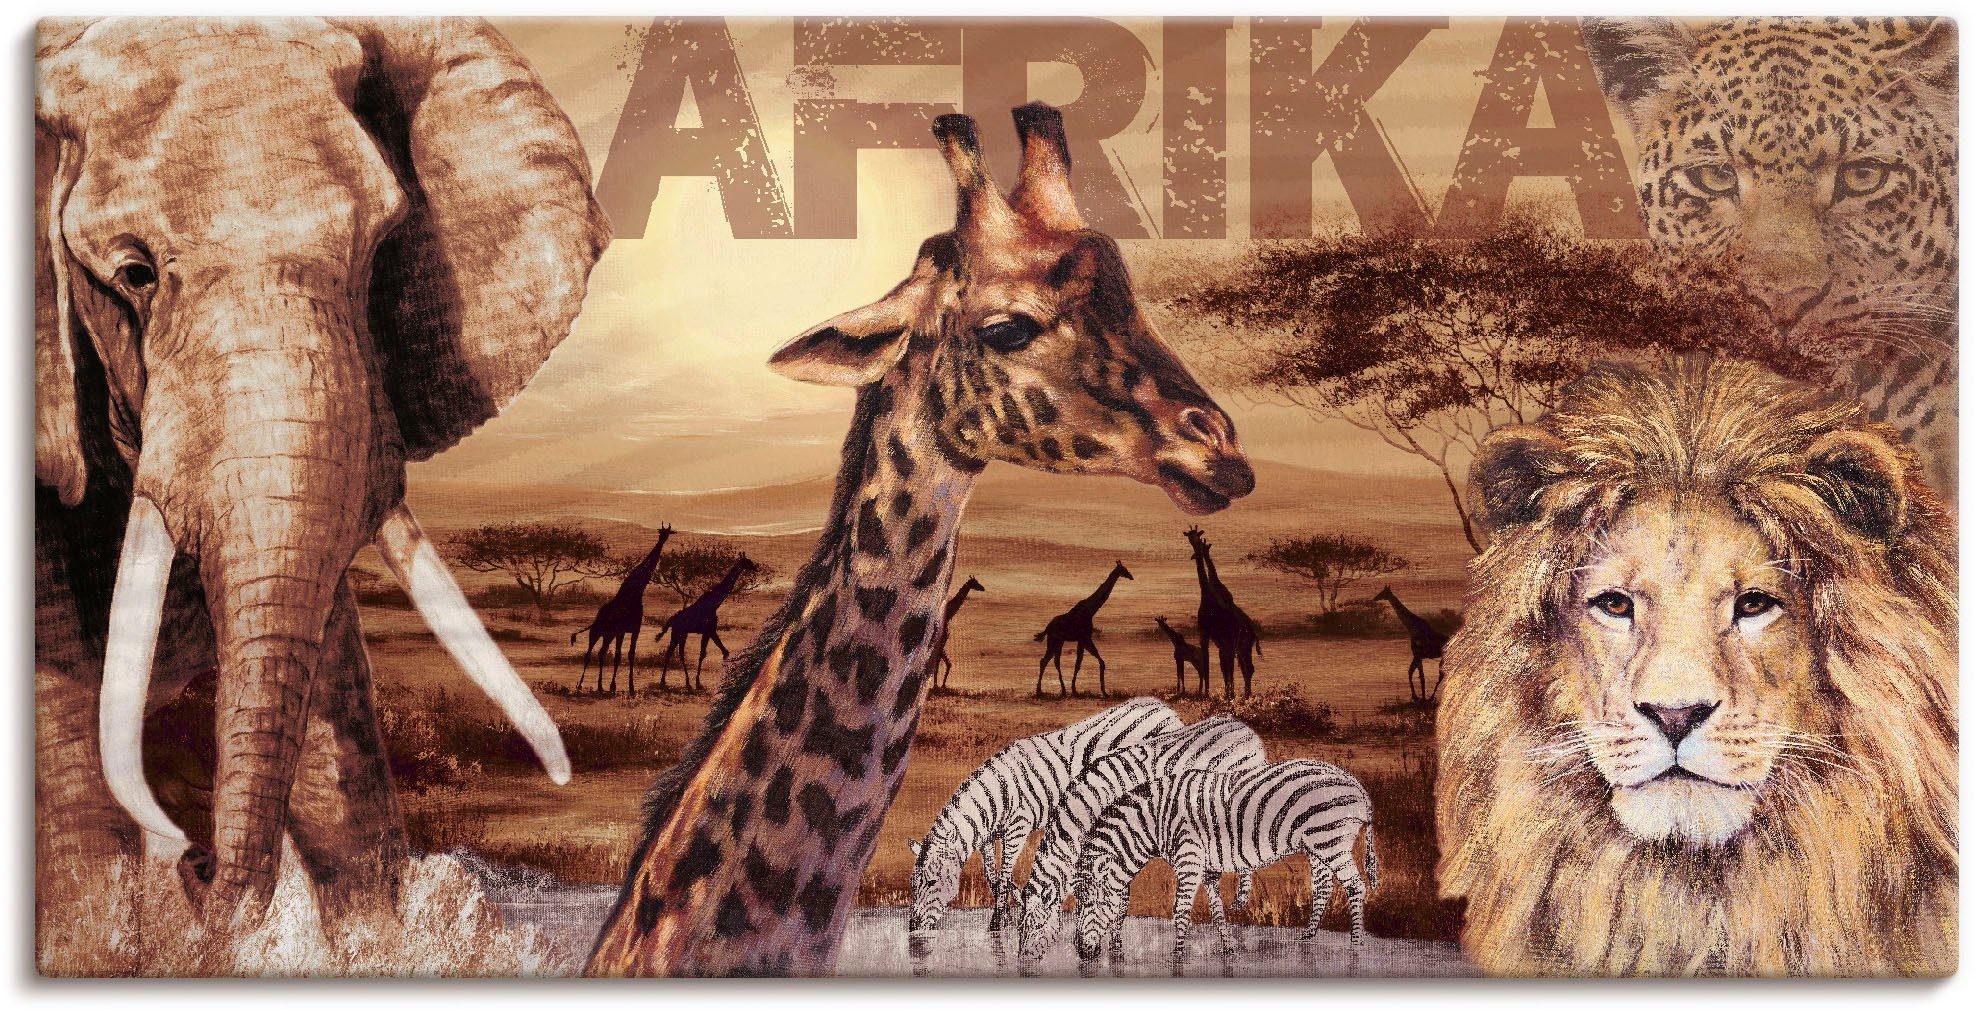 Artland Artprint Afrika in vele afmetingen & productsoorten - artprint van aluminium / artprint voor buiten, artprint op linnen, poster, muursticker / wandfolie ook geschikt voor d